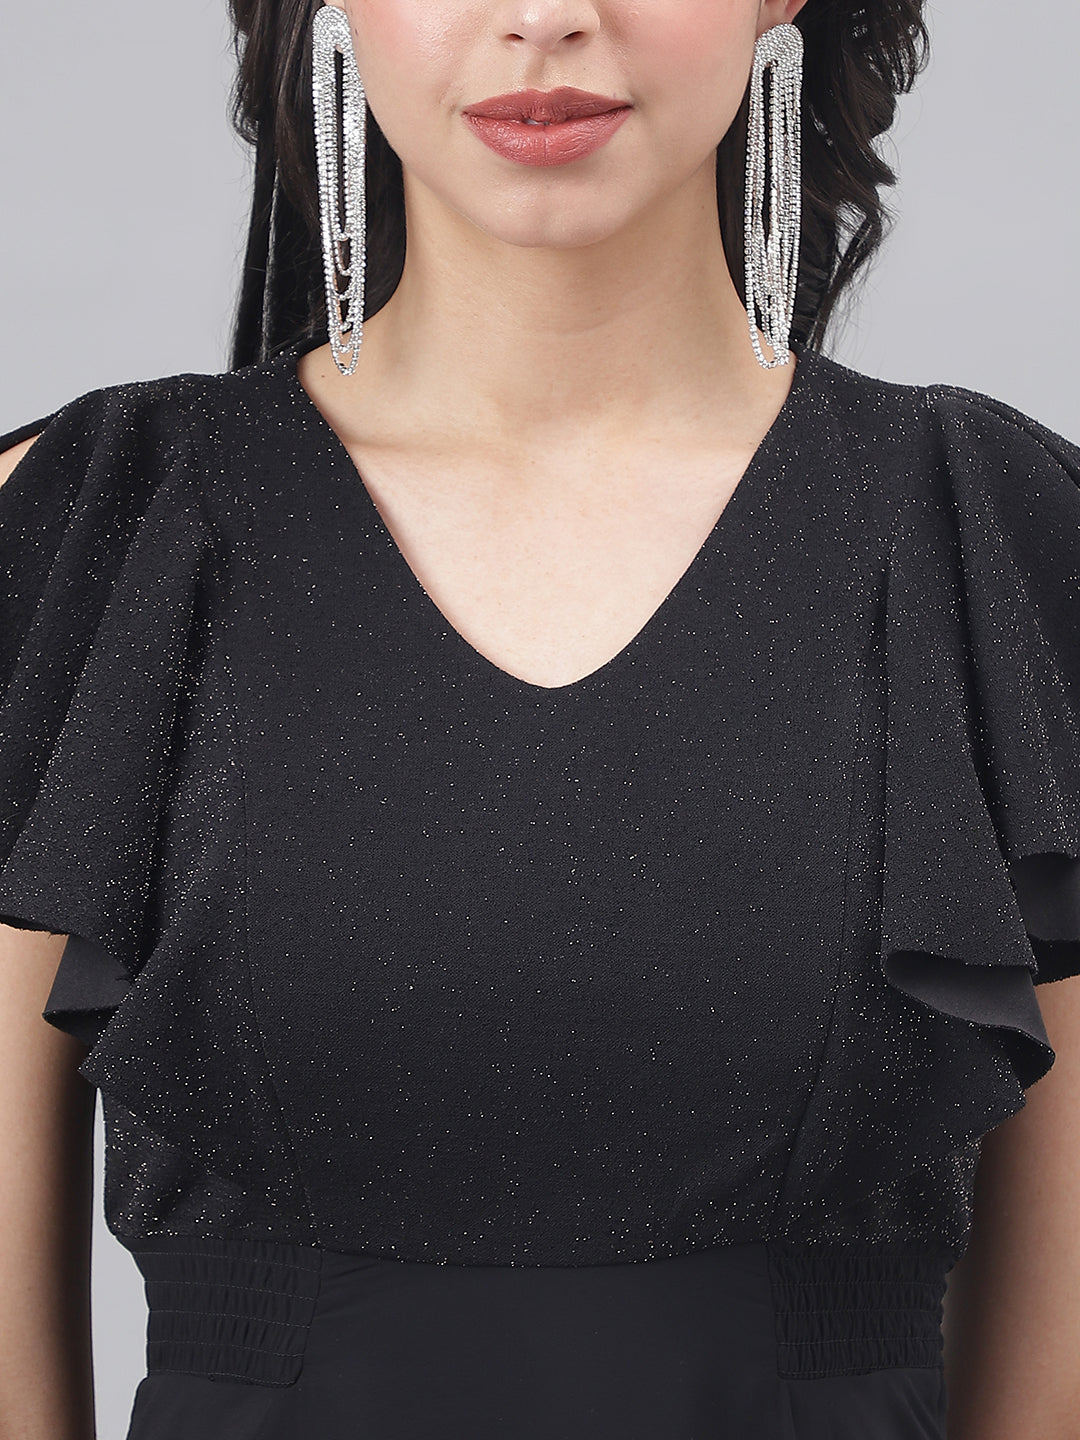 Black Cap Sleeve V-Neck Women Maxi Dress